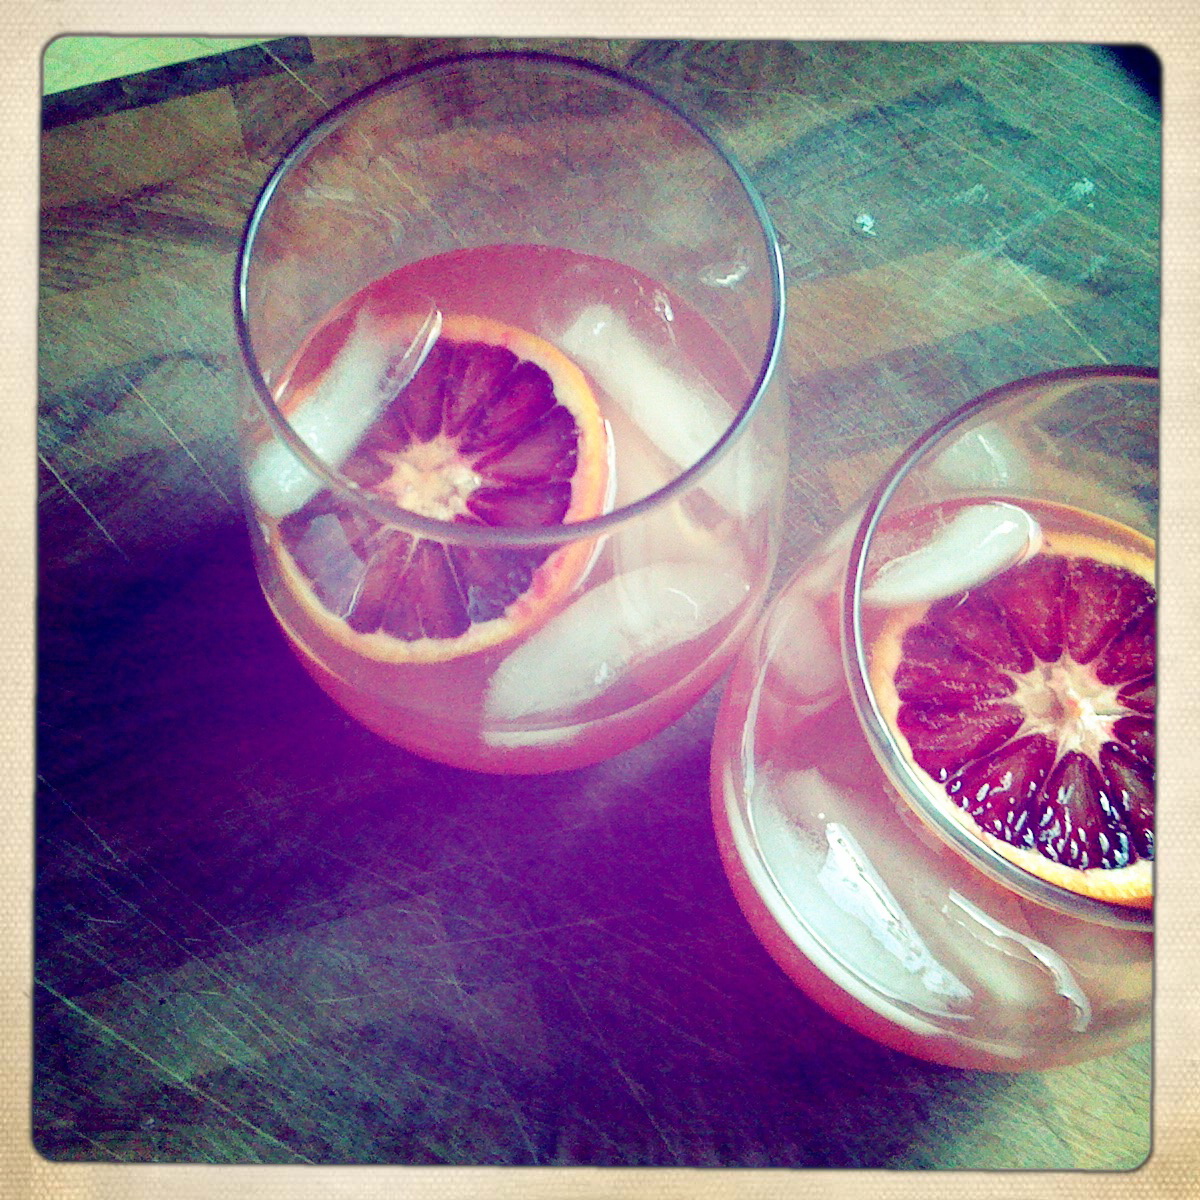 Lillet & blood orange cocktail